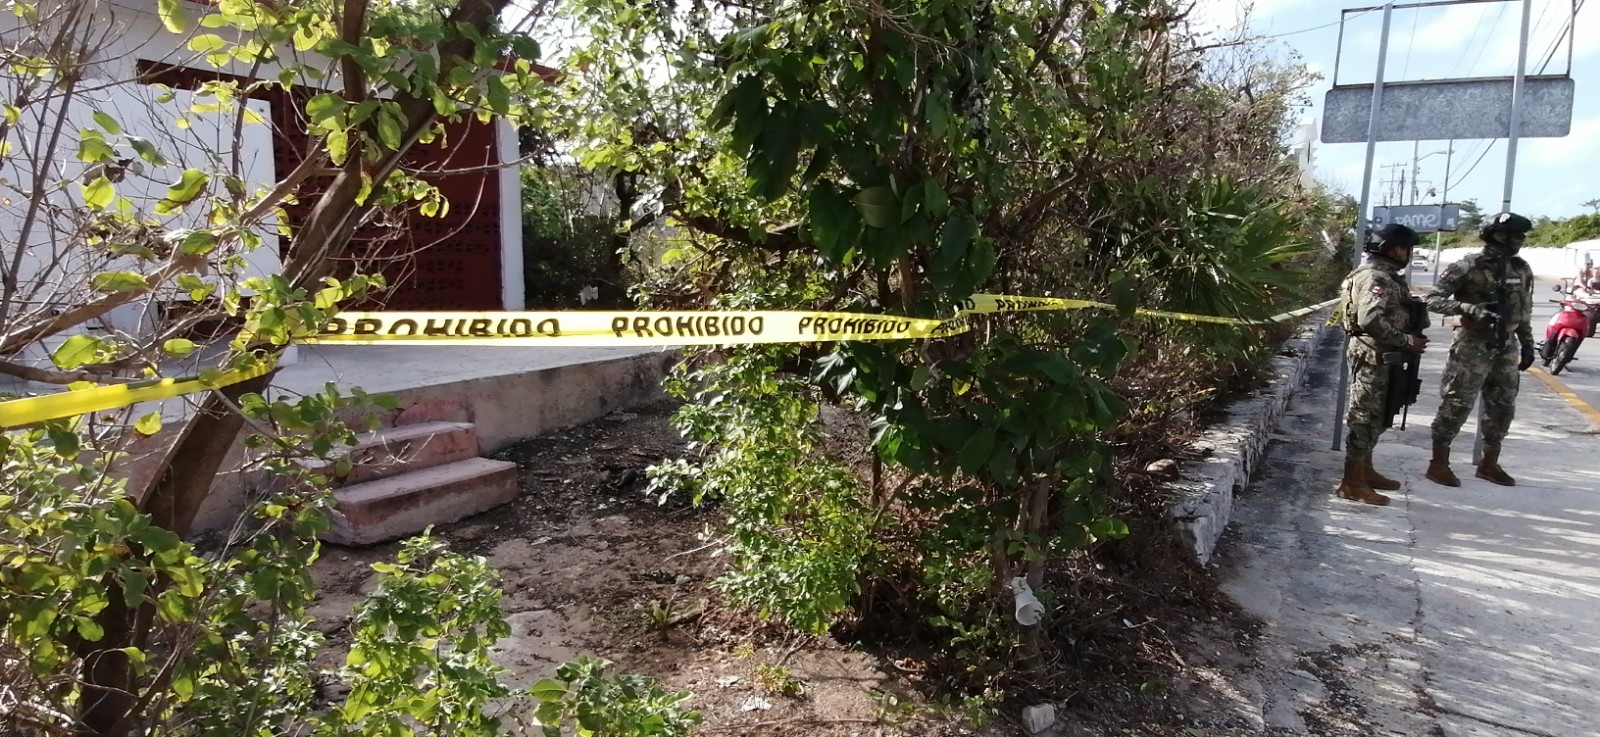 Son 12 ataques registrados contra candidatos en Quintana Roo: Informe